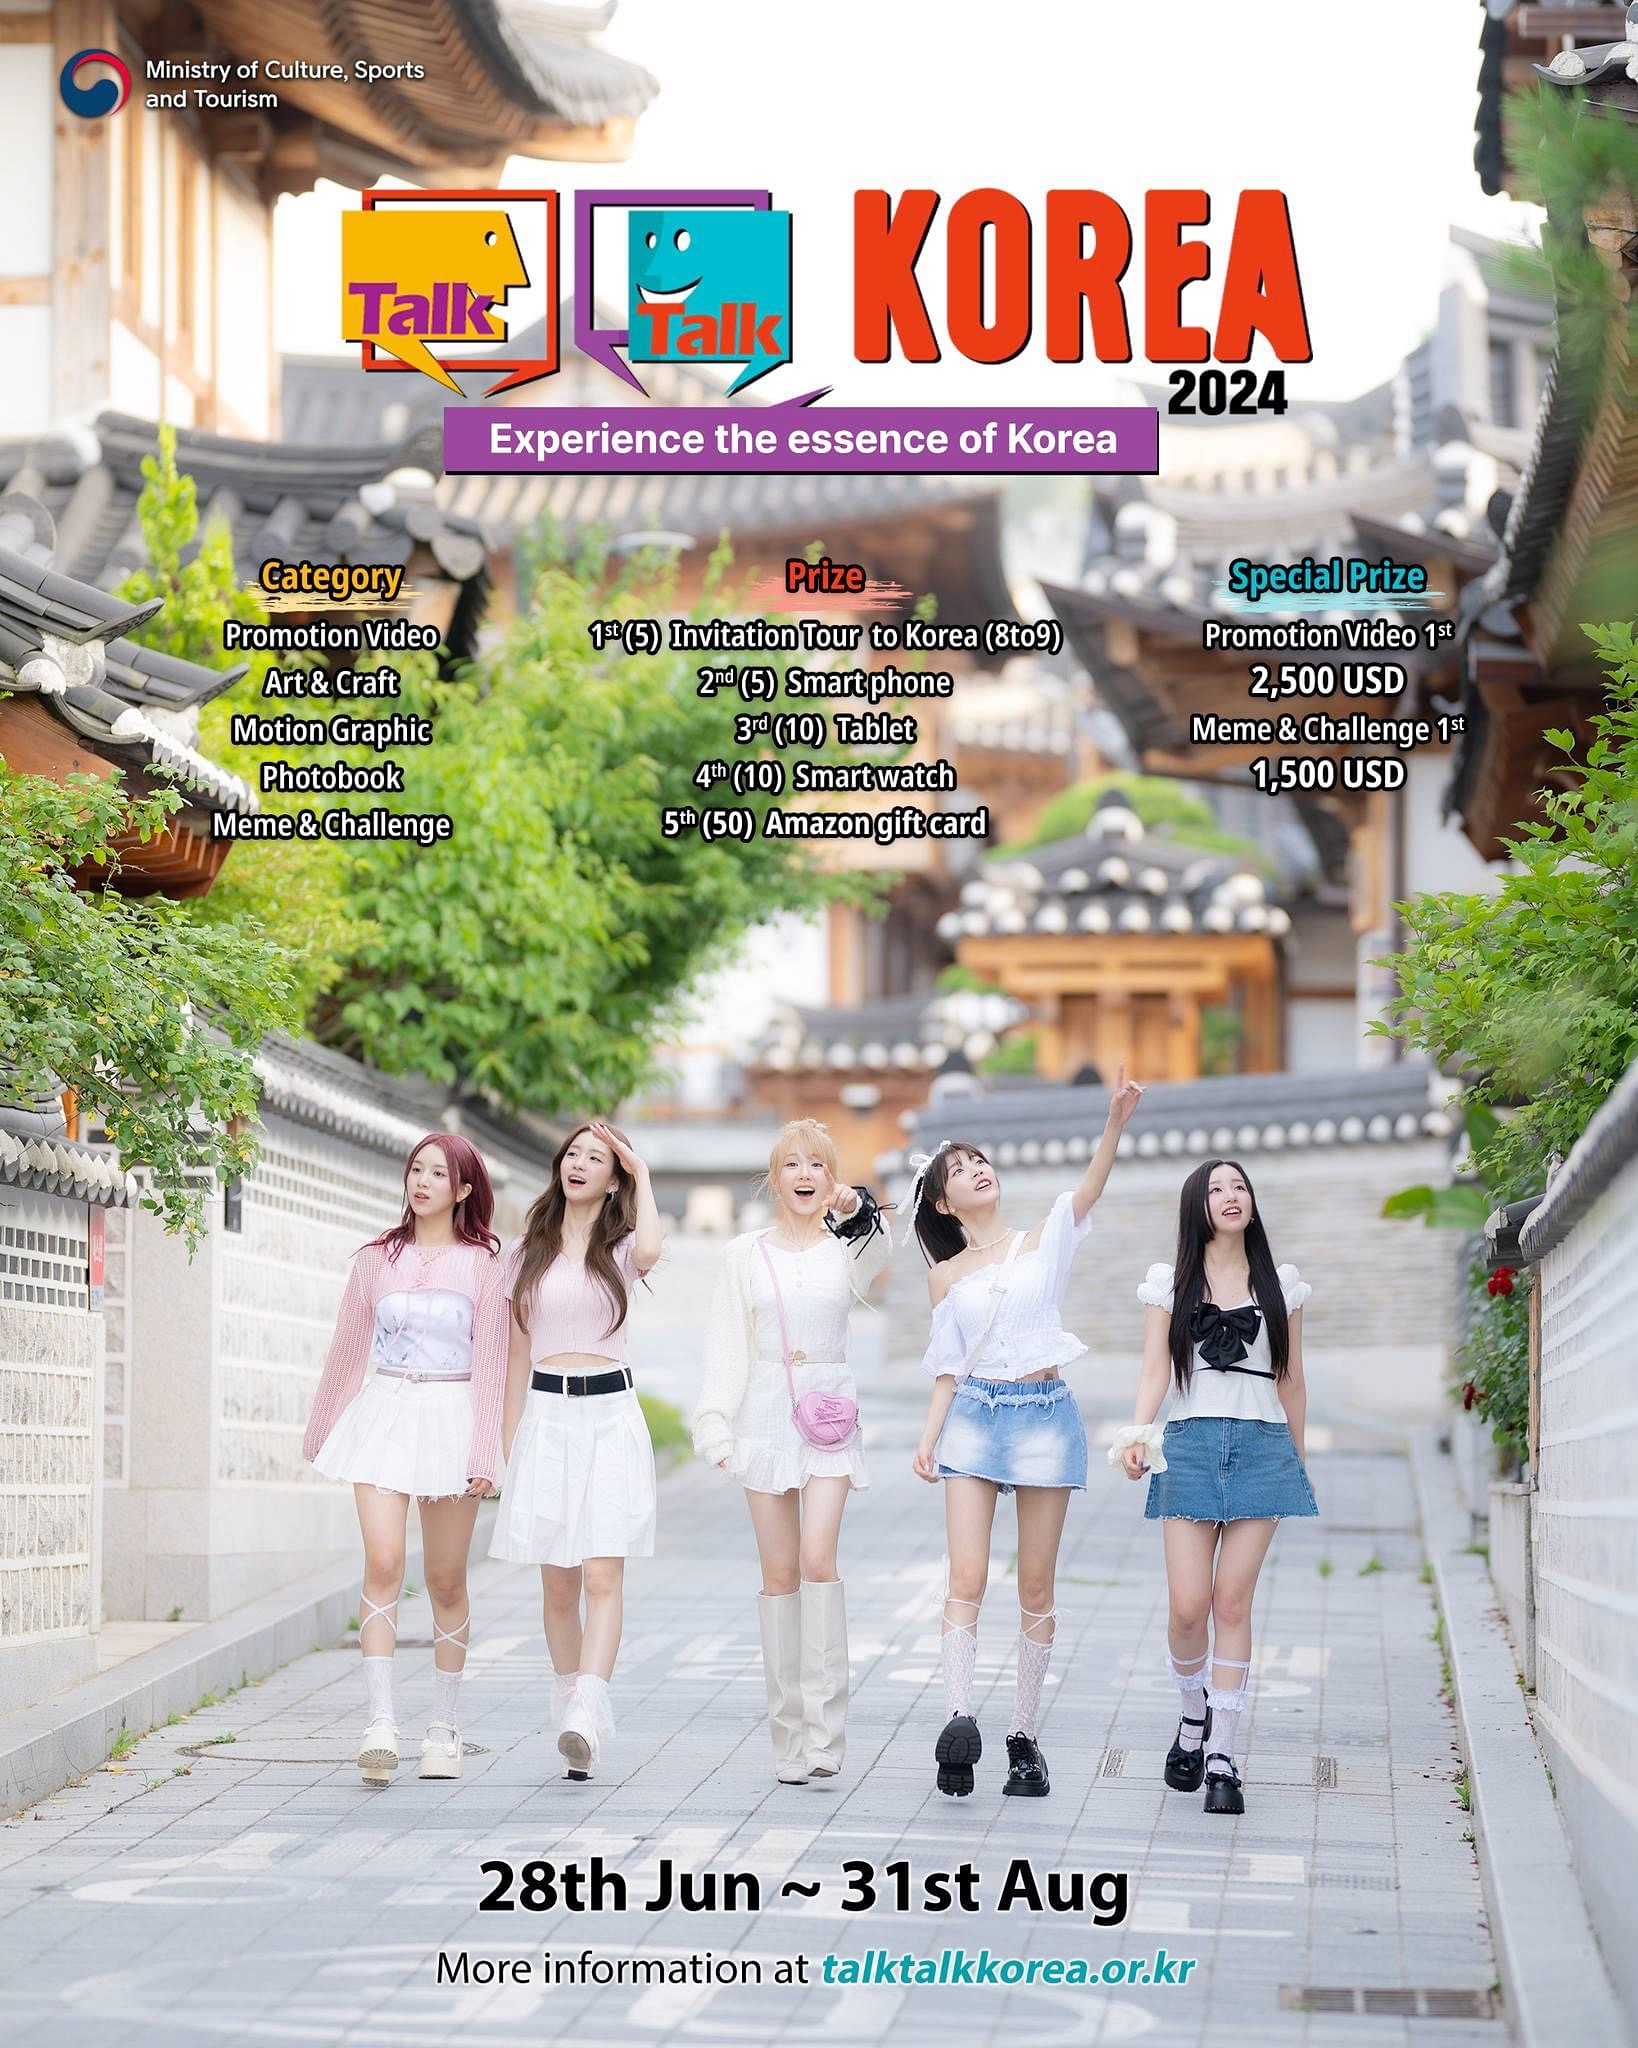 6月28日至8月31日，文化体育观光部主办的全球最大韩流创意征集展“Talk Talk Korea 2024”正式启动作品征集。图片来源：文化体育观光部